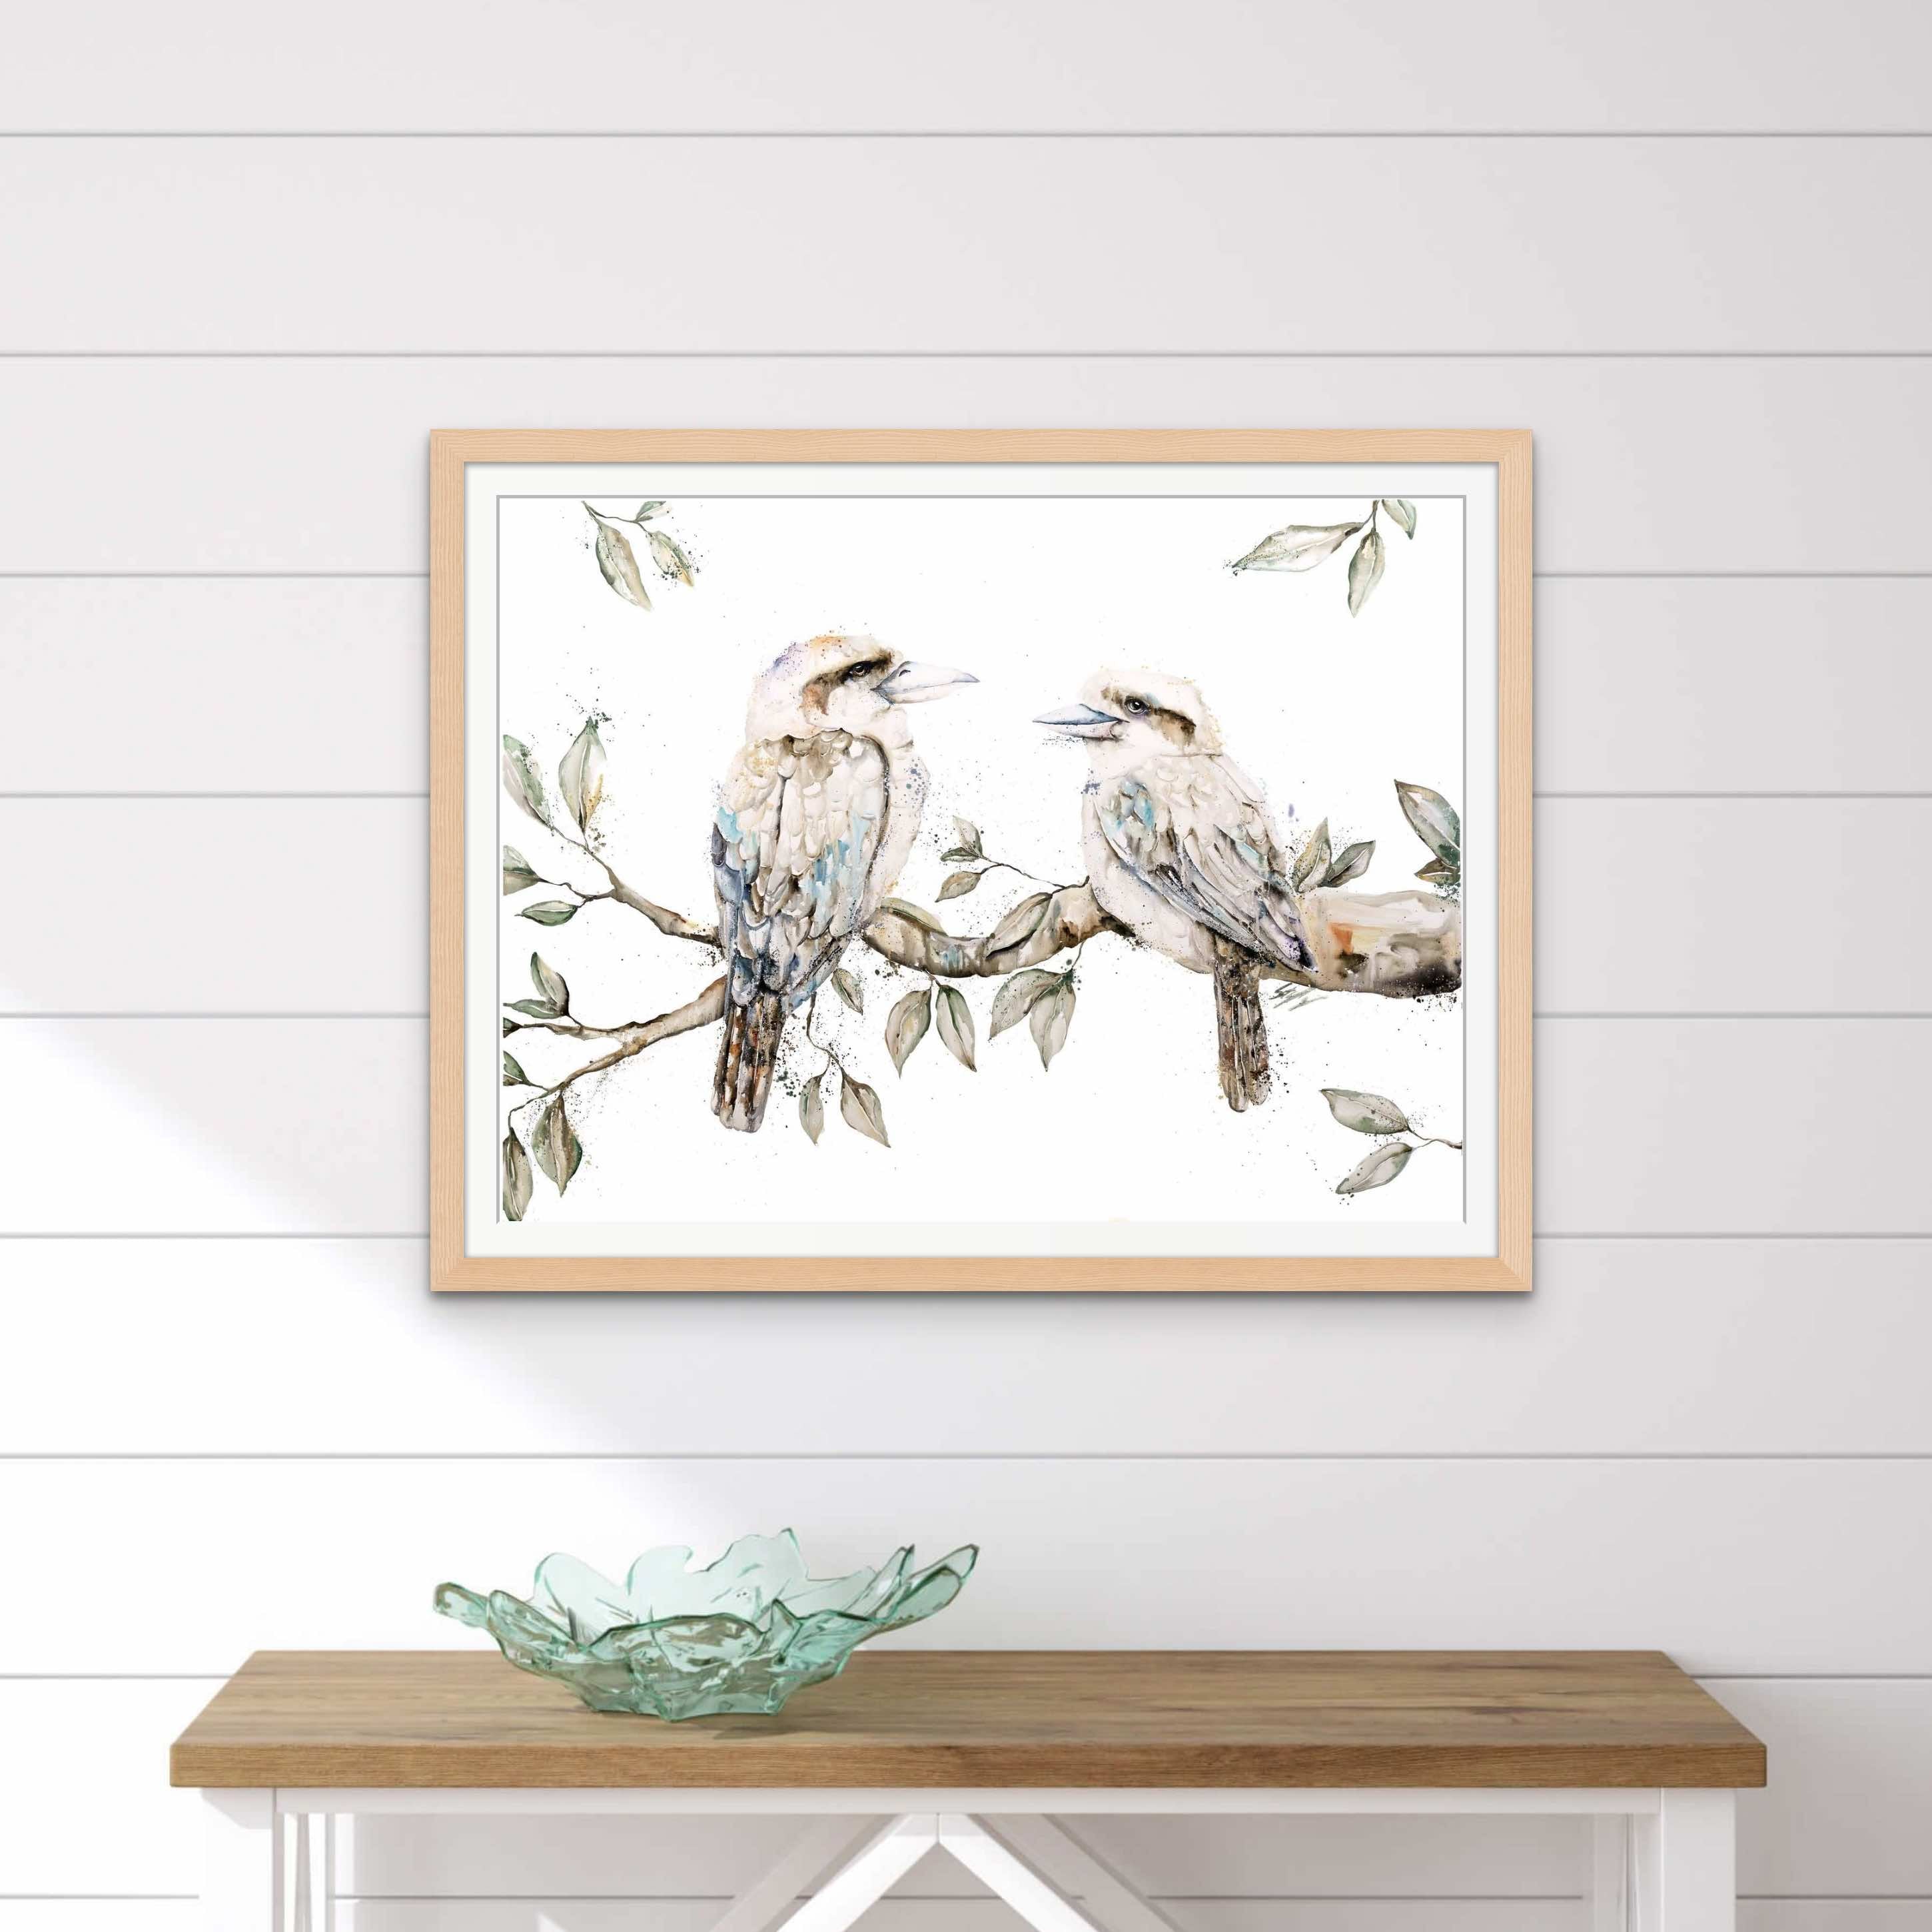 Kookaburra fine art paper print framed in oak